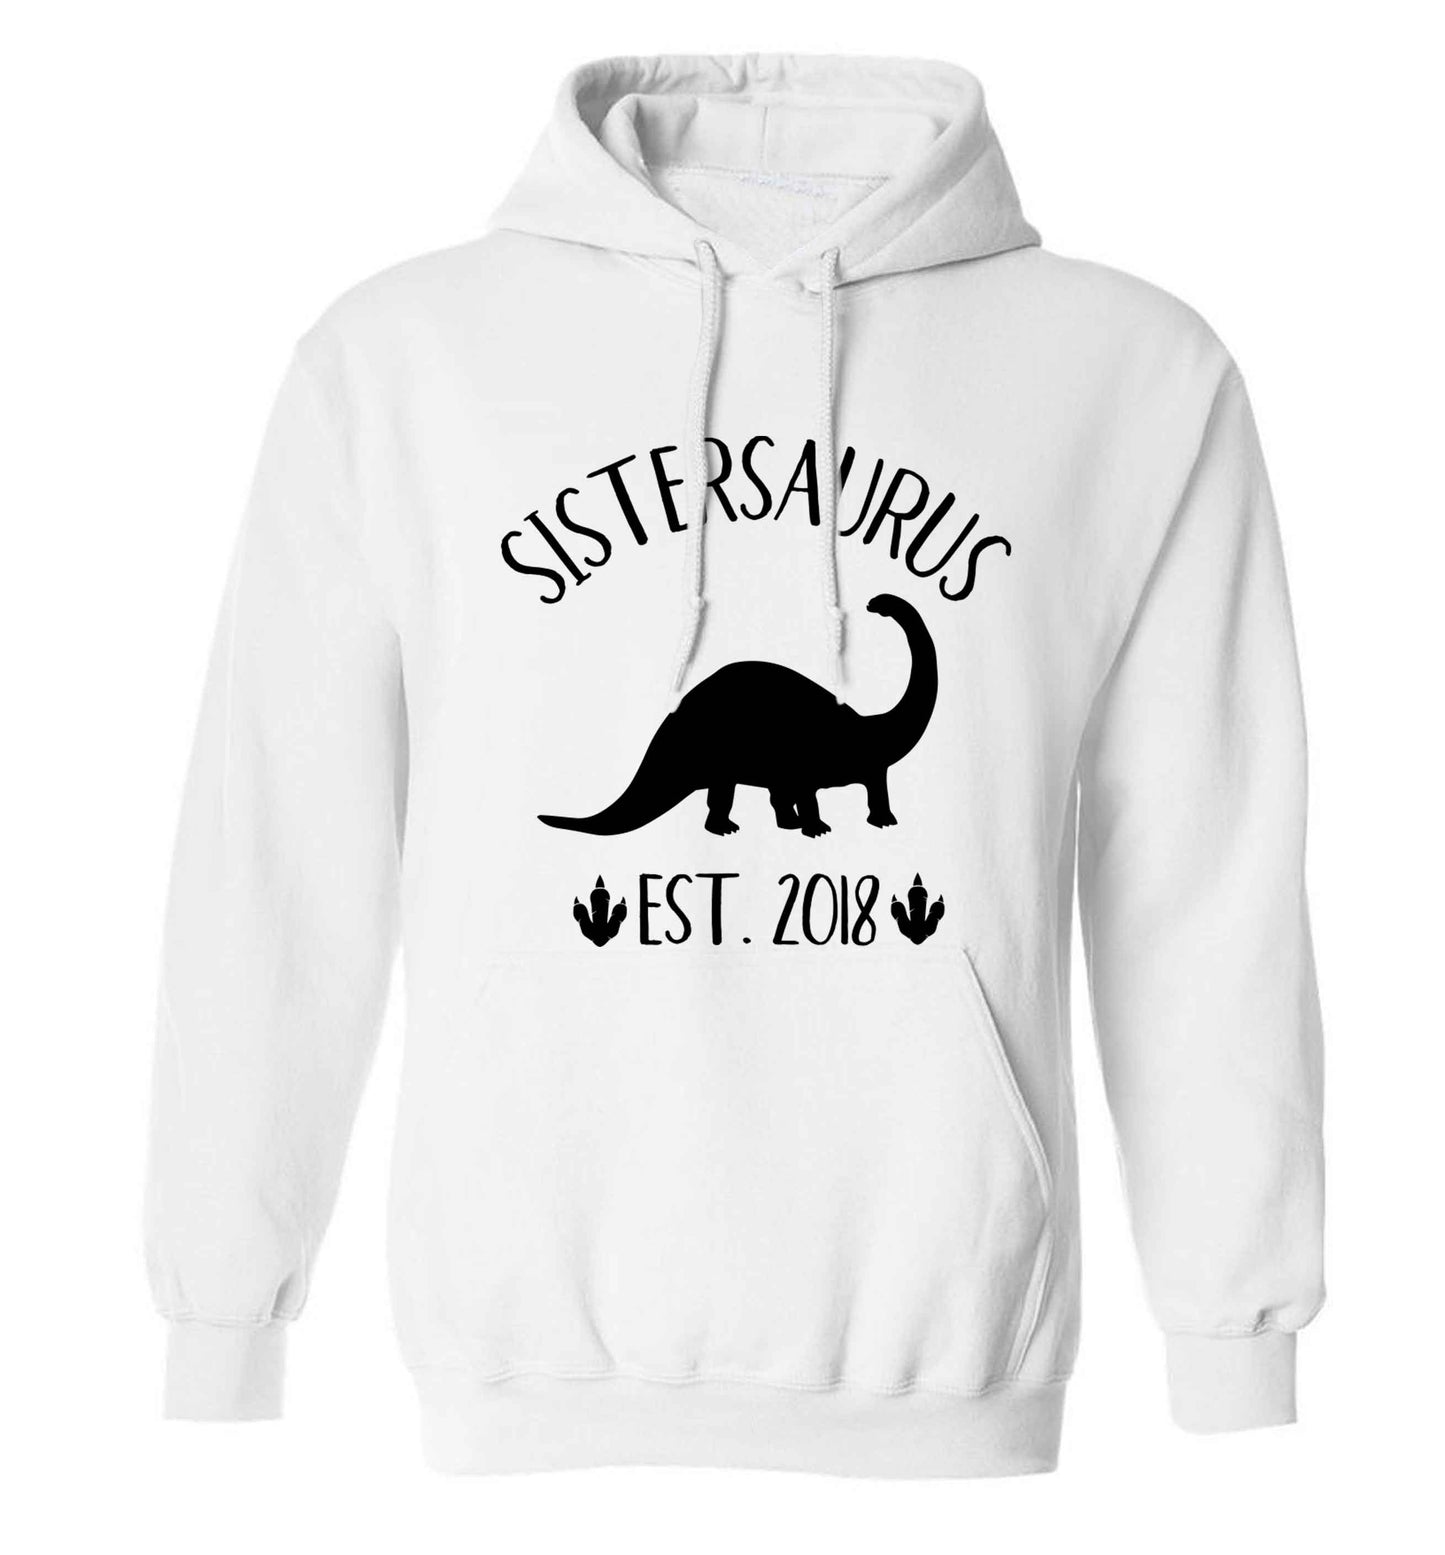 Personalised sistersaurus since (custom date) adults unisex white hoodie 2XL